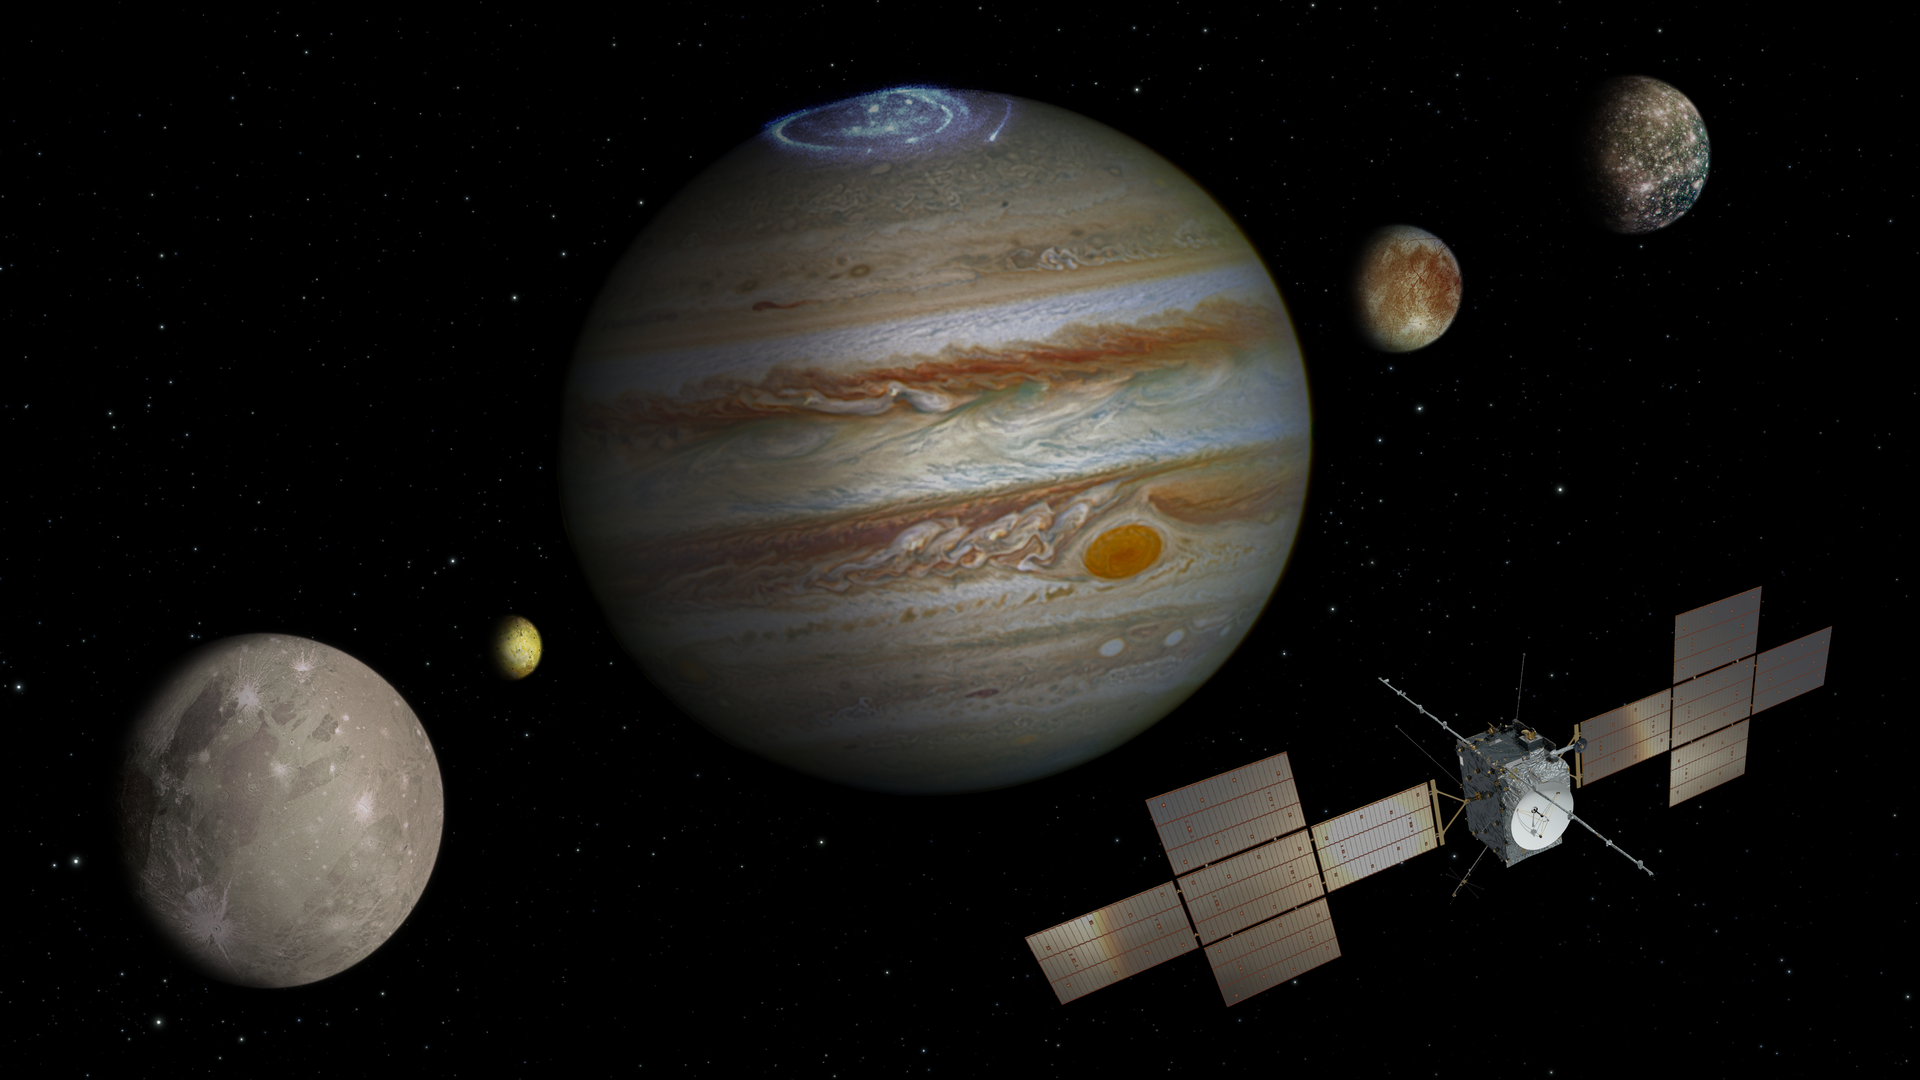 Interplanetare Station JUICE entfaltet Antenne - keine Gefahr für die Mission zur Suche nach Leben auf Jupiters Trabanten